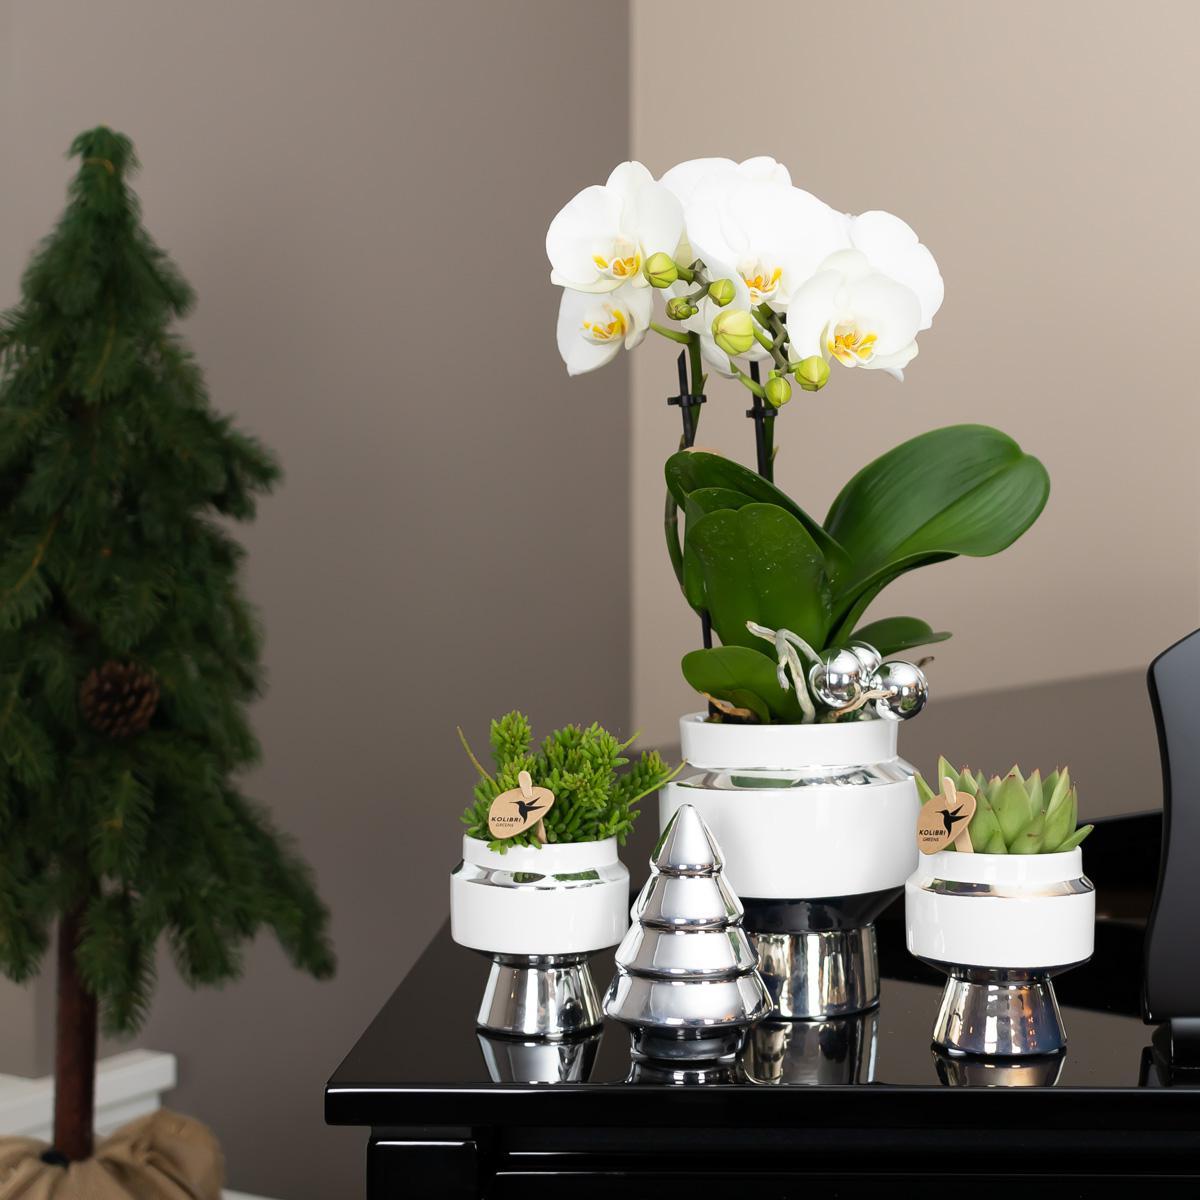 Hummingbird Home | Le Chic flowerpot - White ceramic decorative pot with silver details - pot size Ø6cm